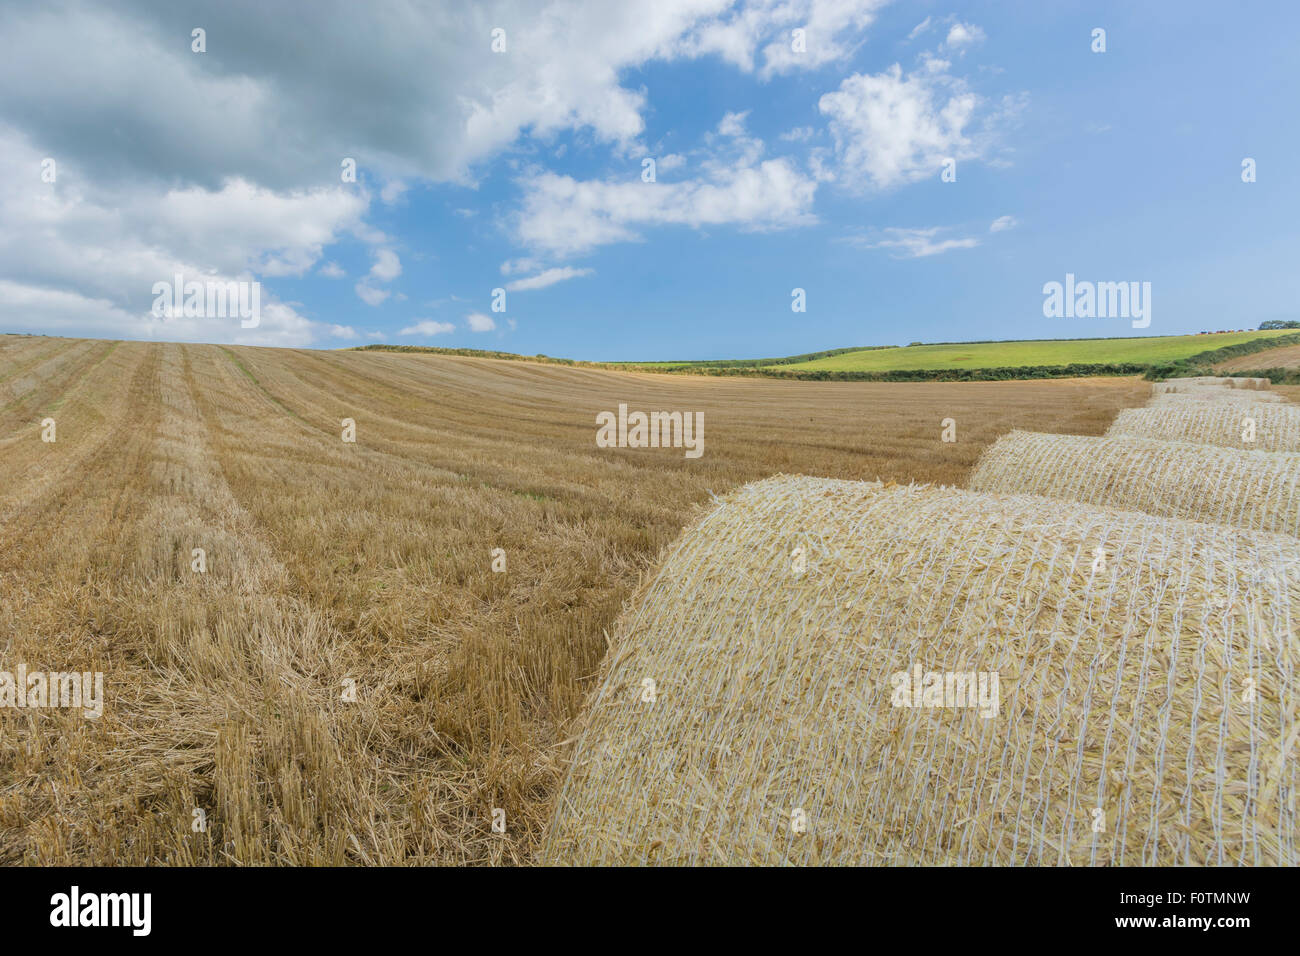 Stoppel Feld nach der geernteten Getreide. Fokus auf der unteren Hälfte des Bildes. Metapher für die Ernährungssicherheit/Anbau von Nahrungsmitteln, landwirtschaftlichen Subventionen. Stockfoto